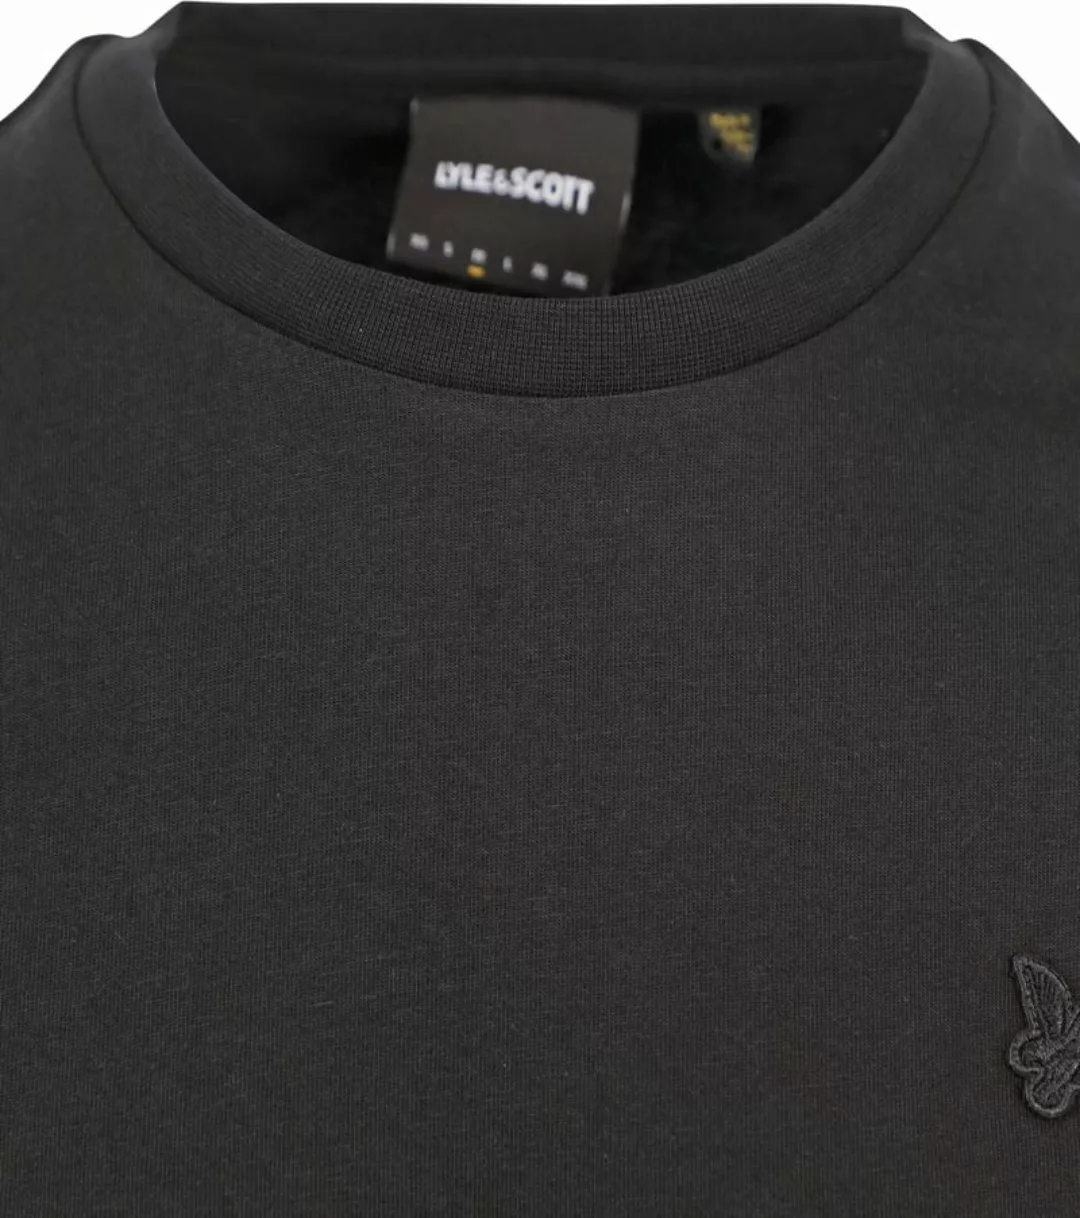 Lyle und Scott T-Shirt Schwarz - Größe M günstig online kaufen